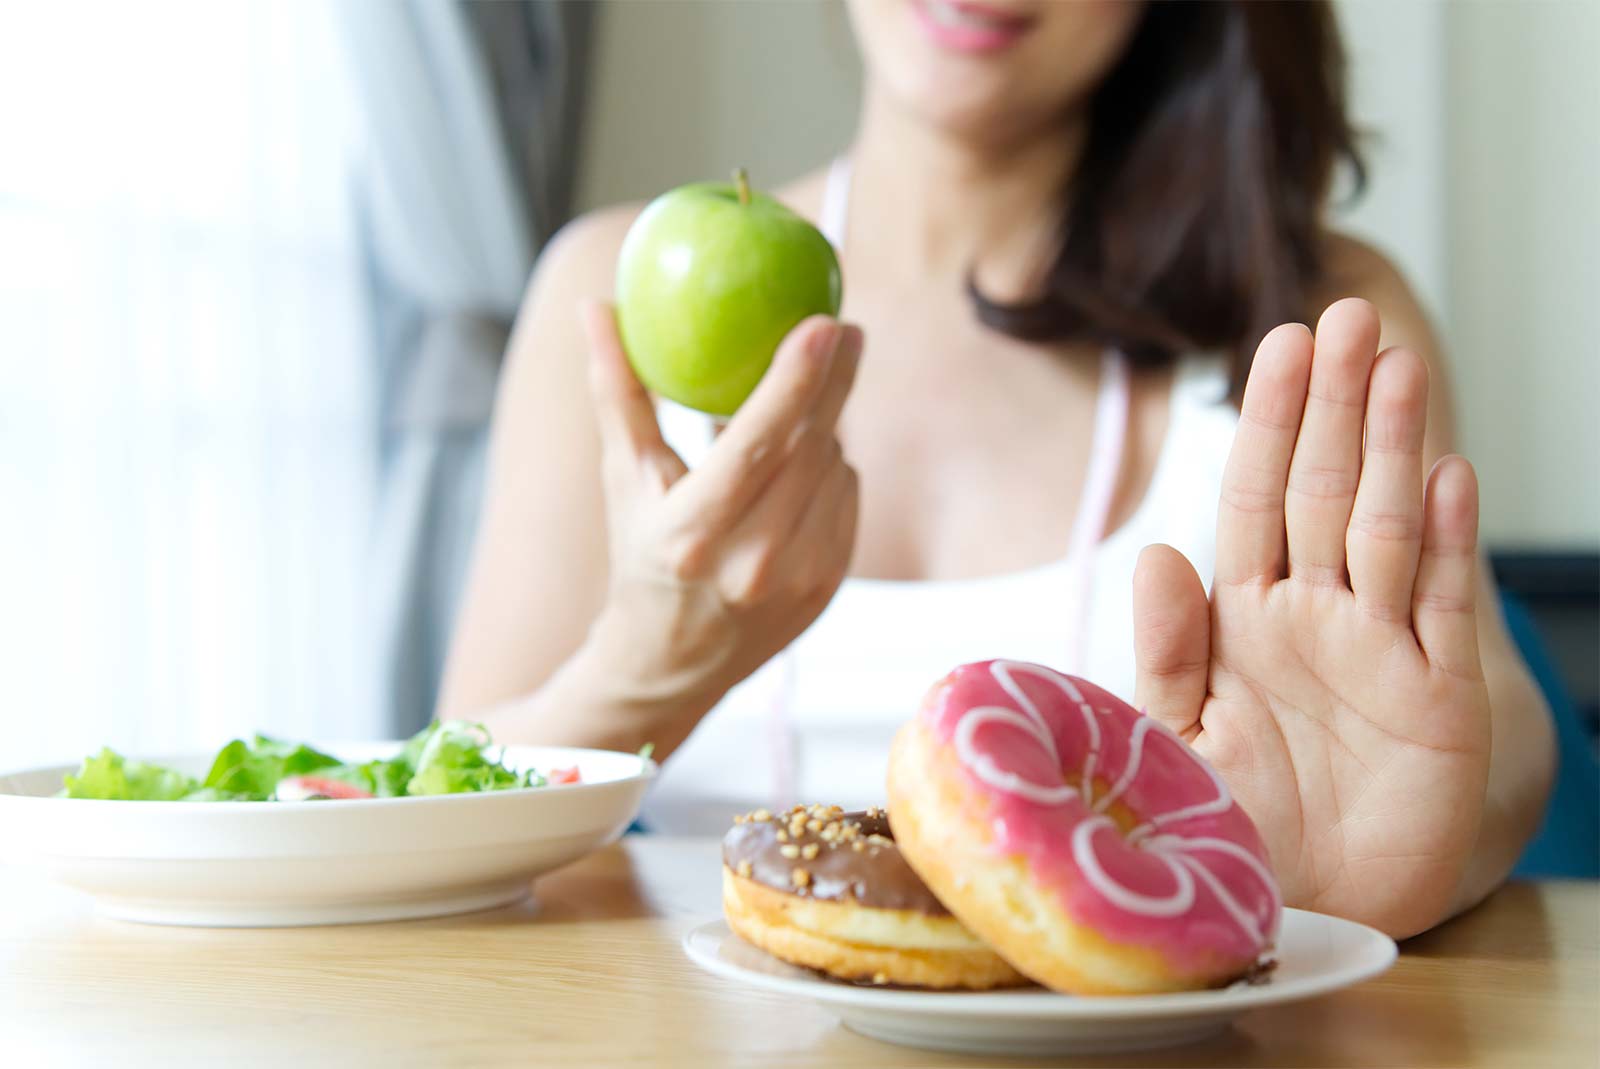 Trastornos de la conducta alimentaria y obesidad